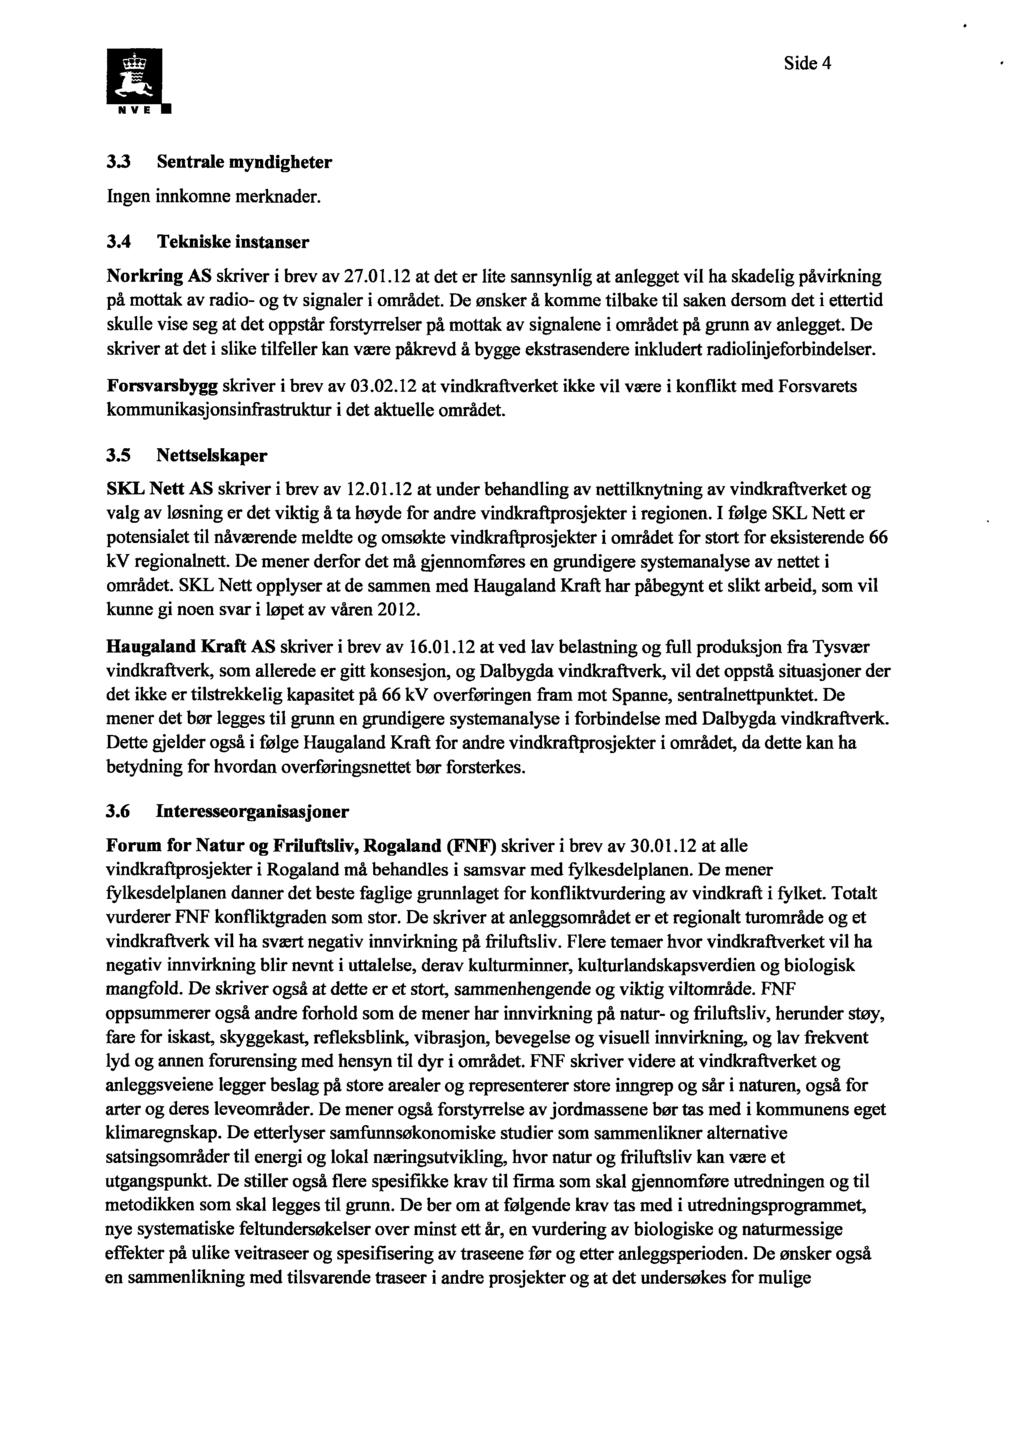 Side 4 N V E 3.3 Sentrale myndigheter Ingen innkomne merknader. 3.4 Tekniske instanser Norkring AS skriver i brev av 27.01.